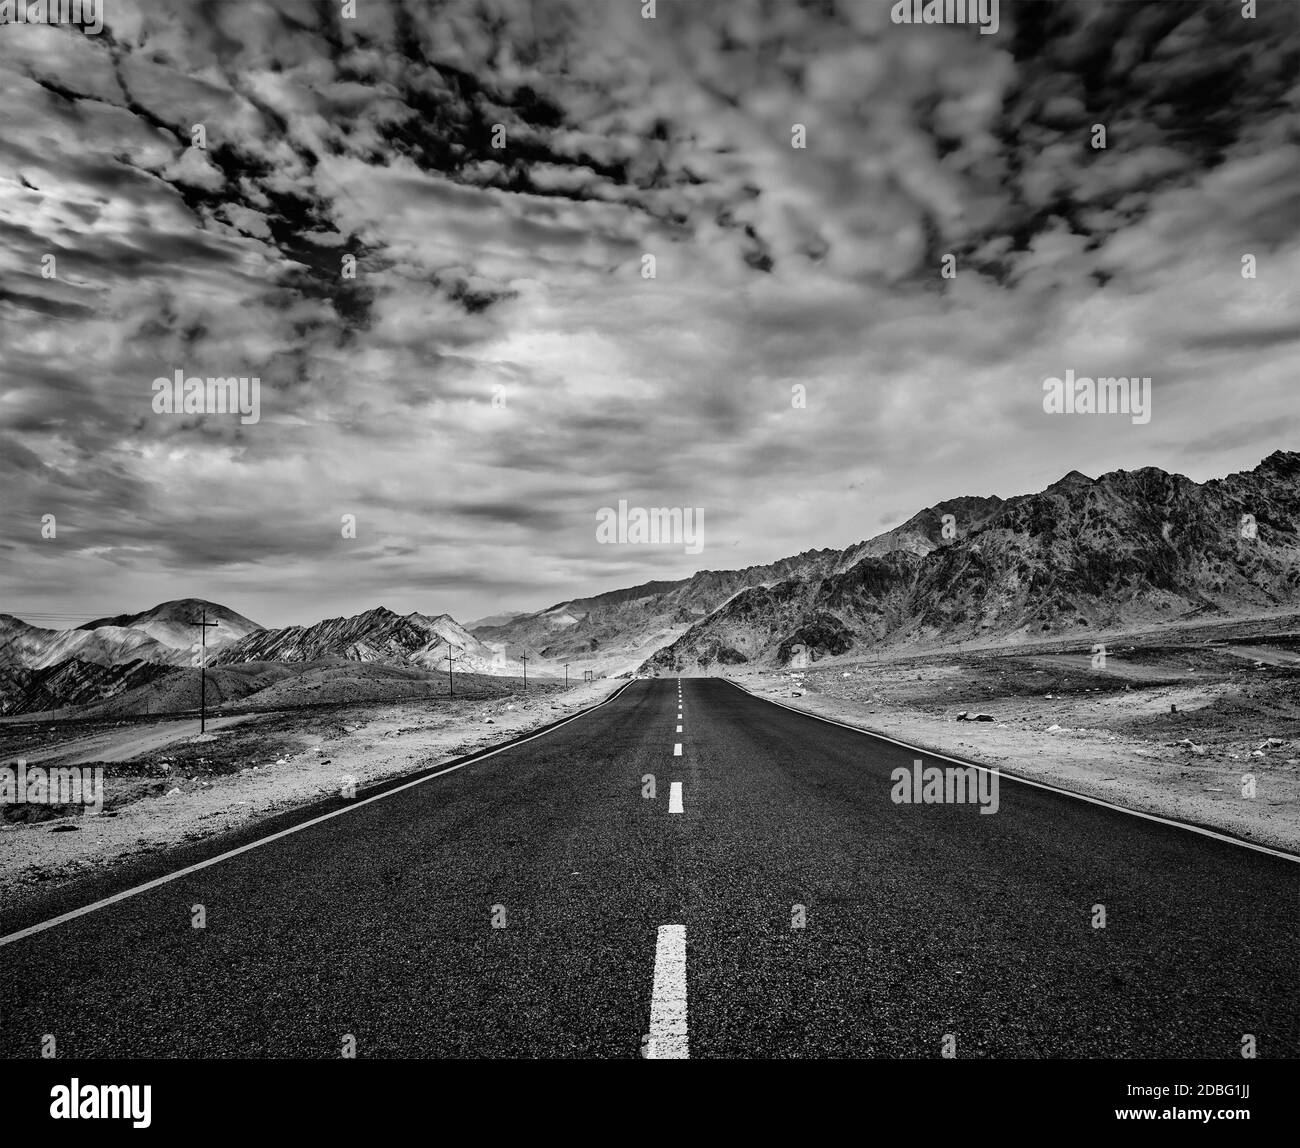 Reise vorwärts Konzept Hintergrund - Straße im Himalaya mit Bergen und dramatischen Wolken. Ladakh, Jammu und Kaschmir, Indien. Schwarz-Weiß-Version Stockfoto